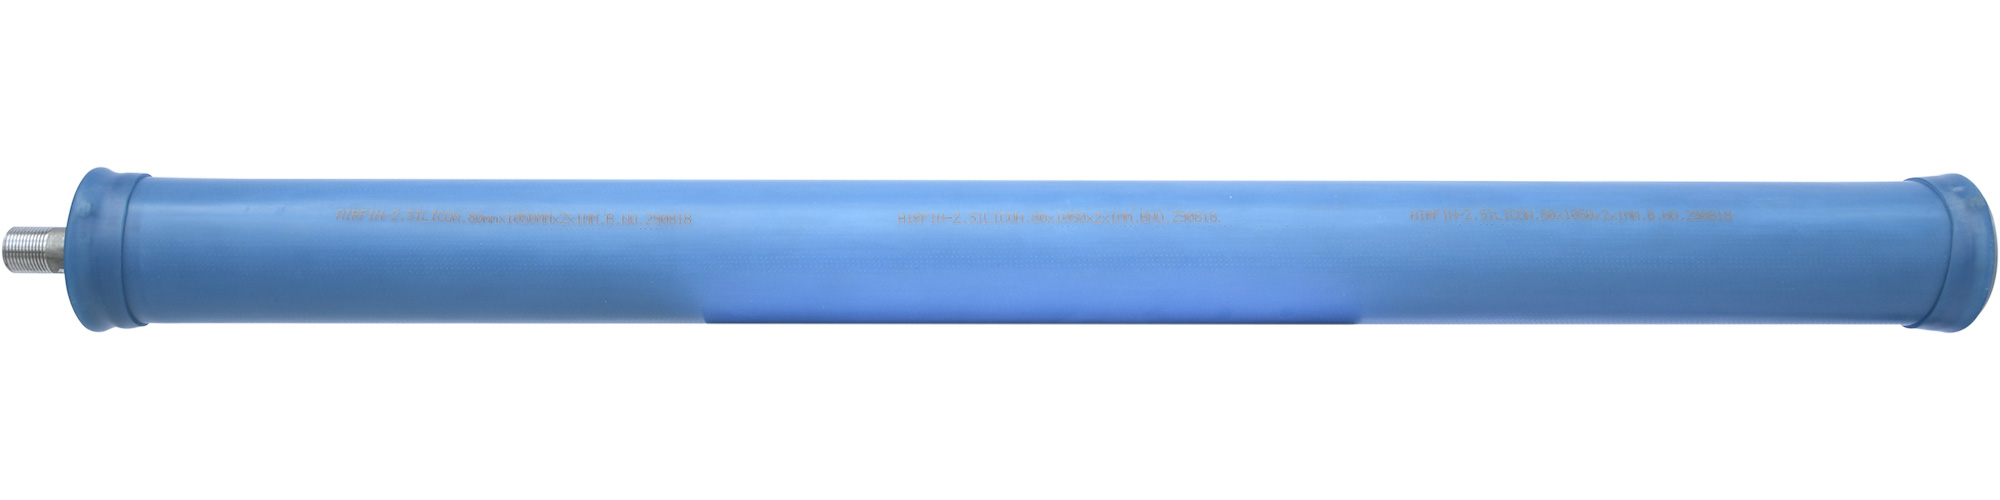 airfin-fine-bubble-tubular-diffusers-airfin-2